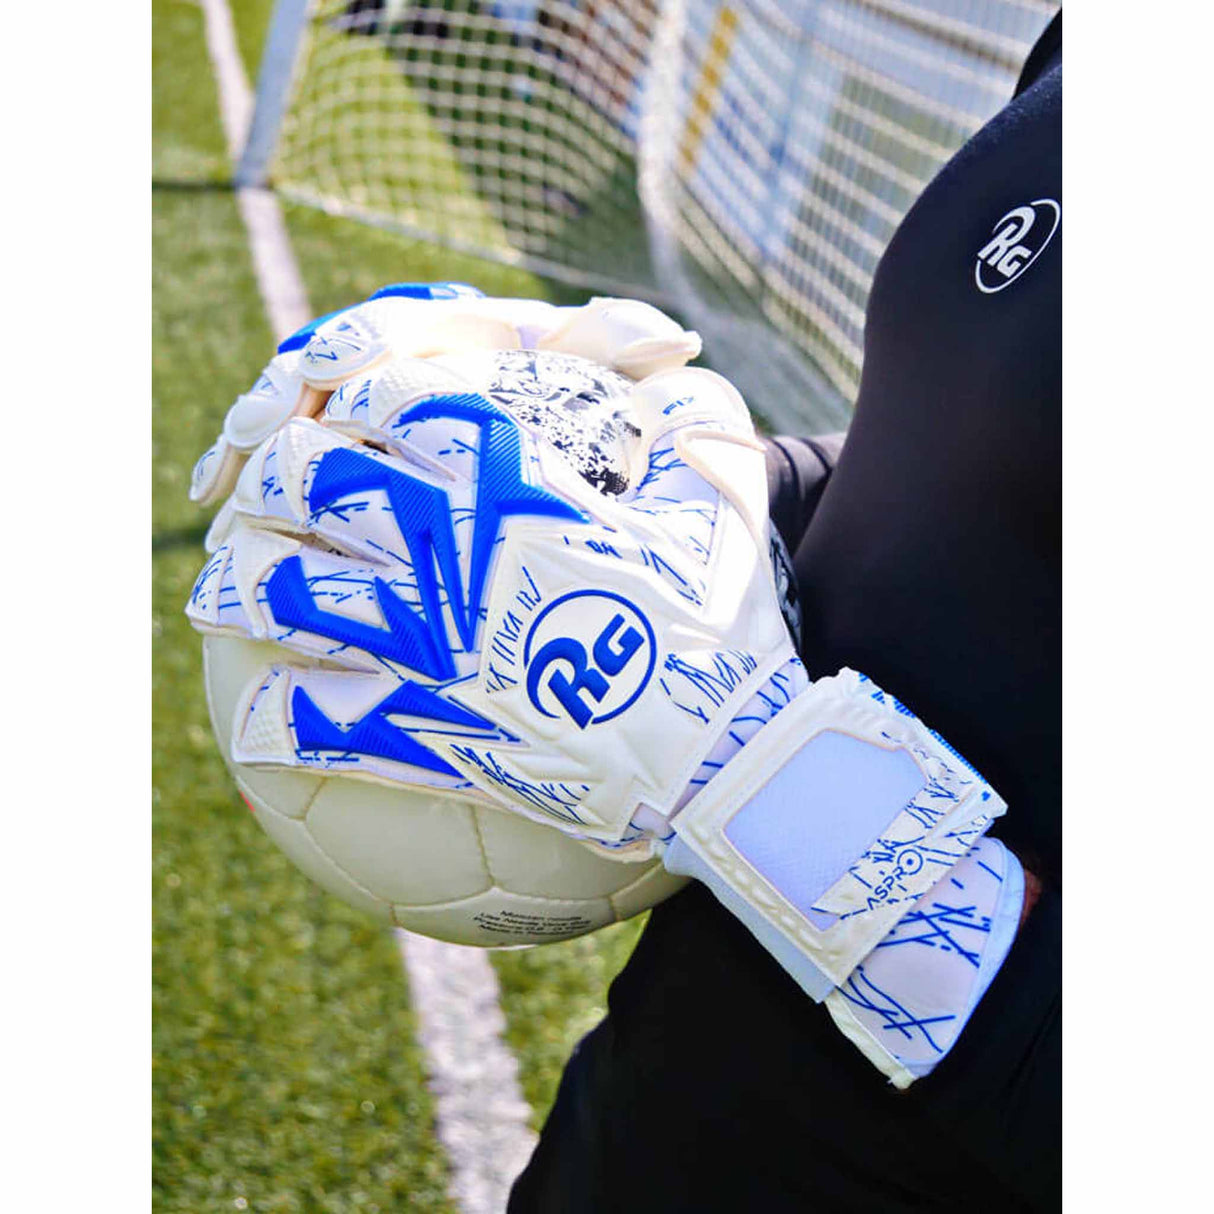 RG Goalkeeper Gloves Aspro gants de gardien de but de soccer - Blanc / Bleu